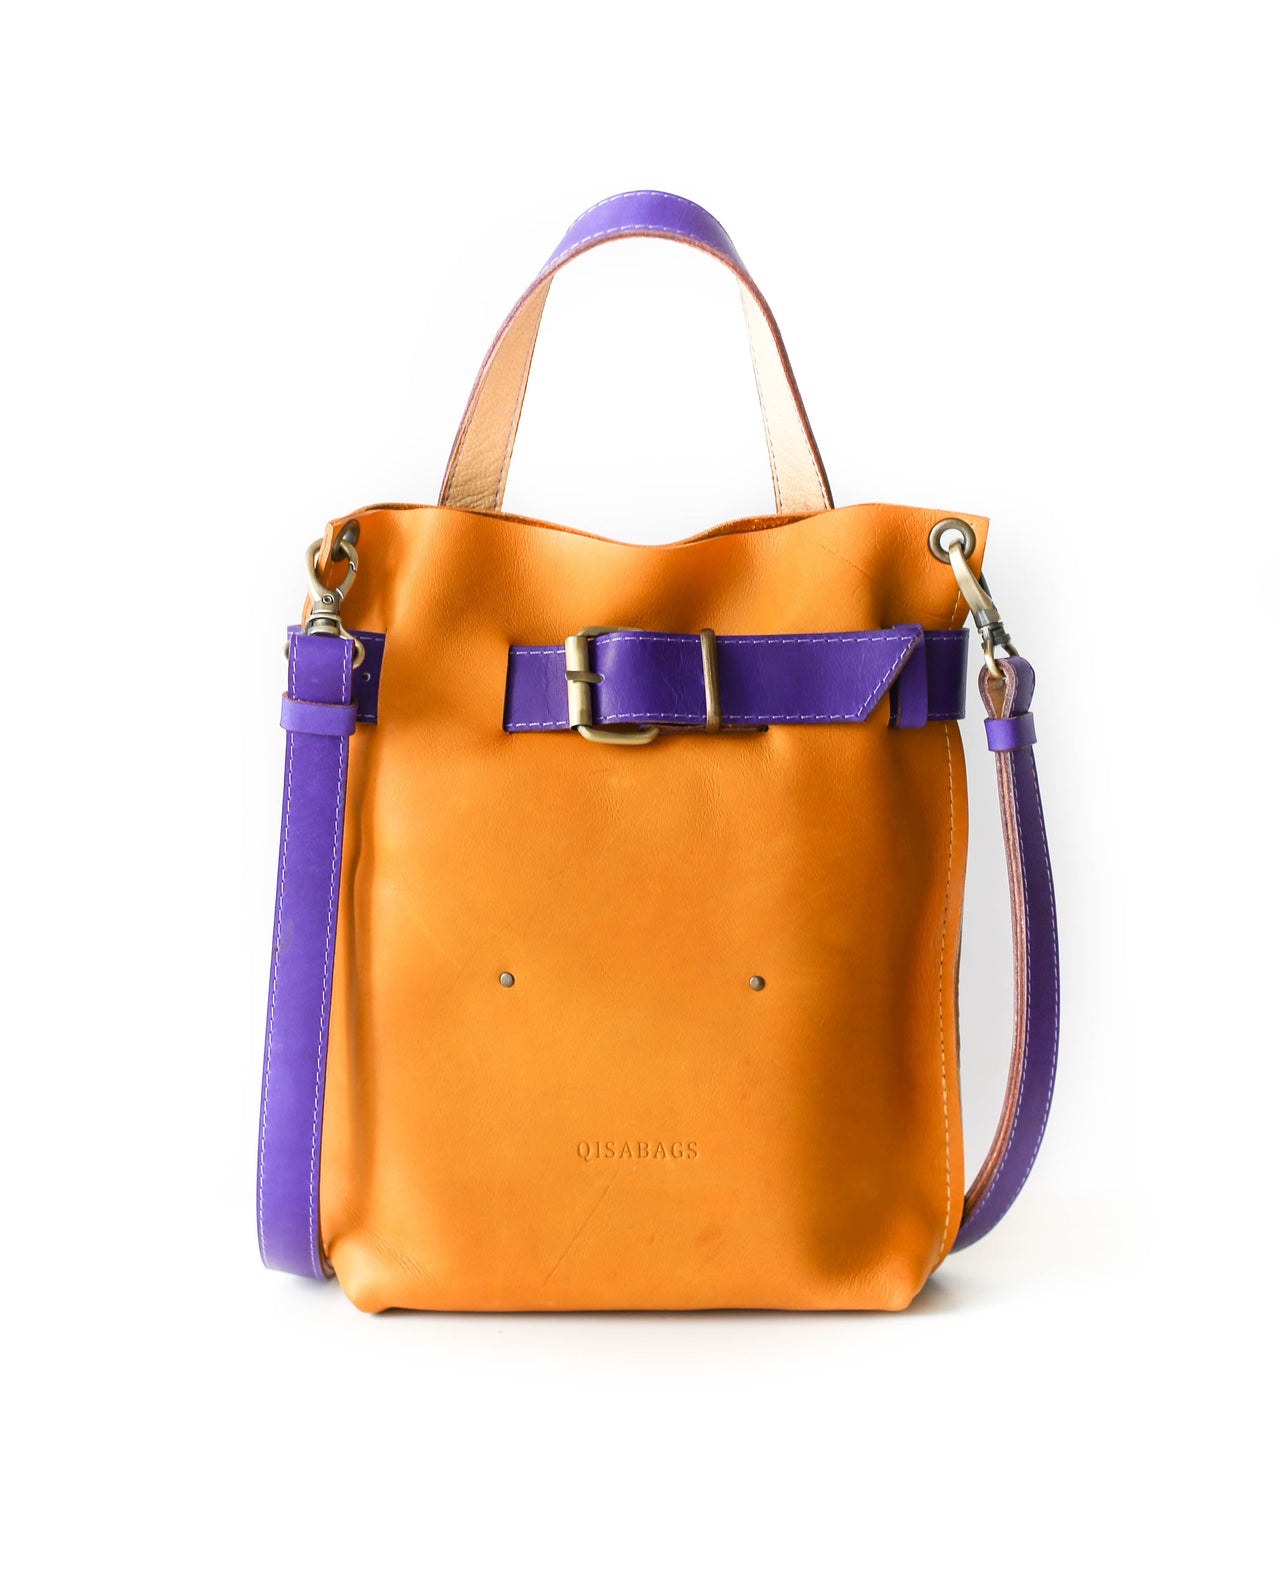 Designer leather purse